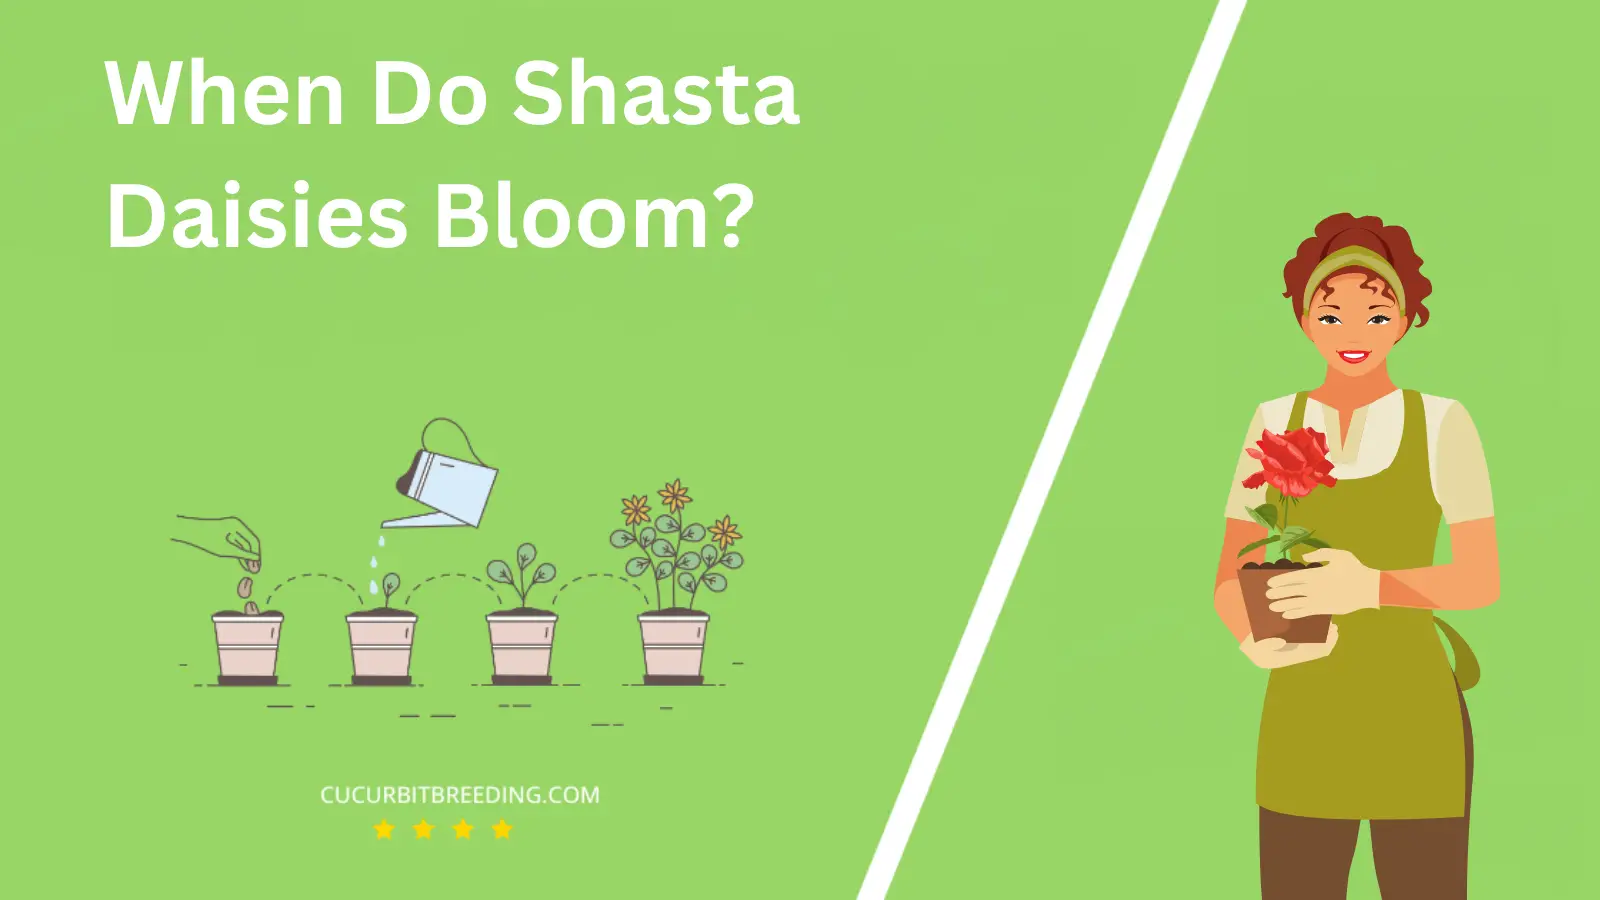 When Do Shasta Daisies Bloom?